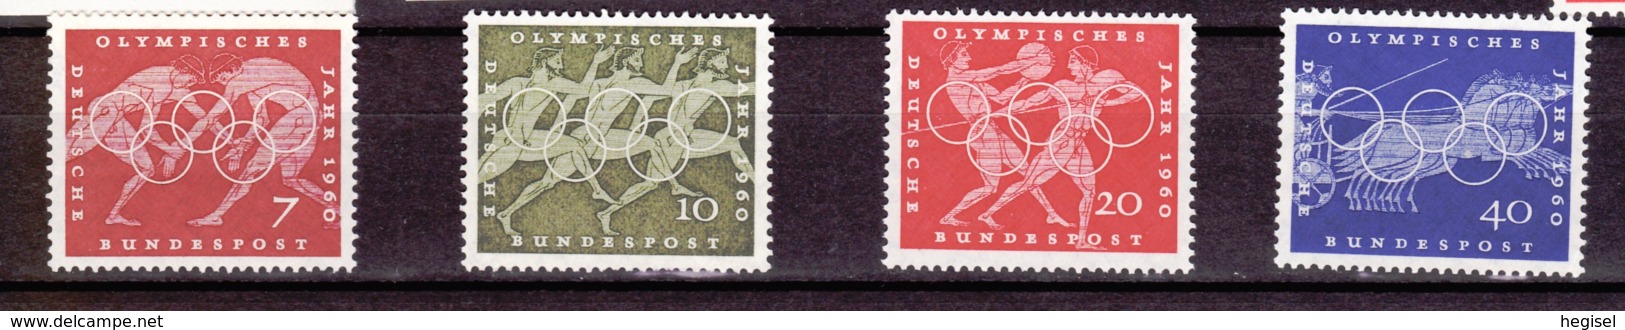 1960  Olympische Sommerspiele Rom (4 Werte), Deutsche Bundespost, Postfrisch - Sommer 1960: Rom